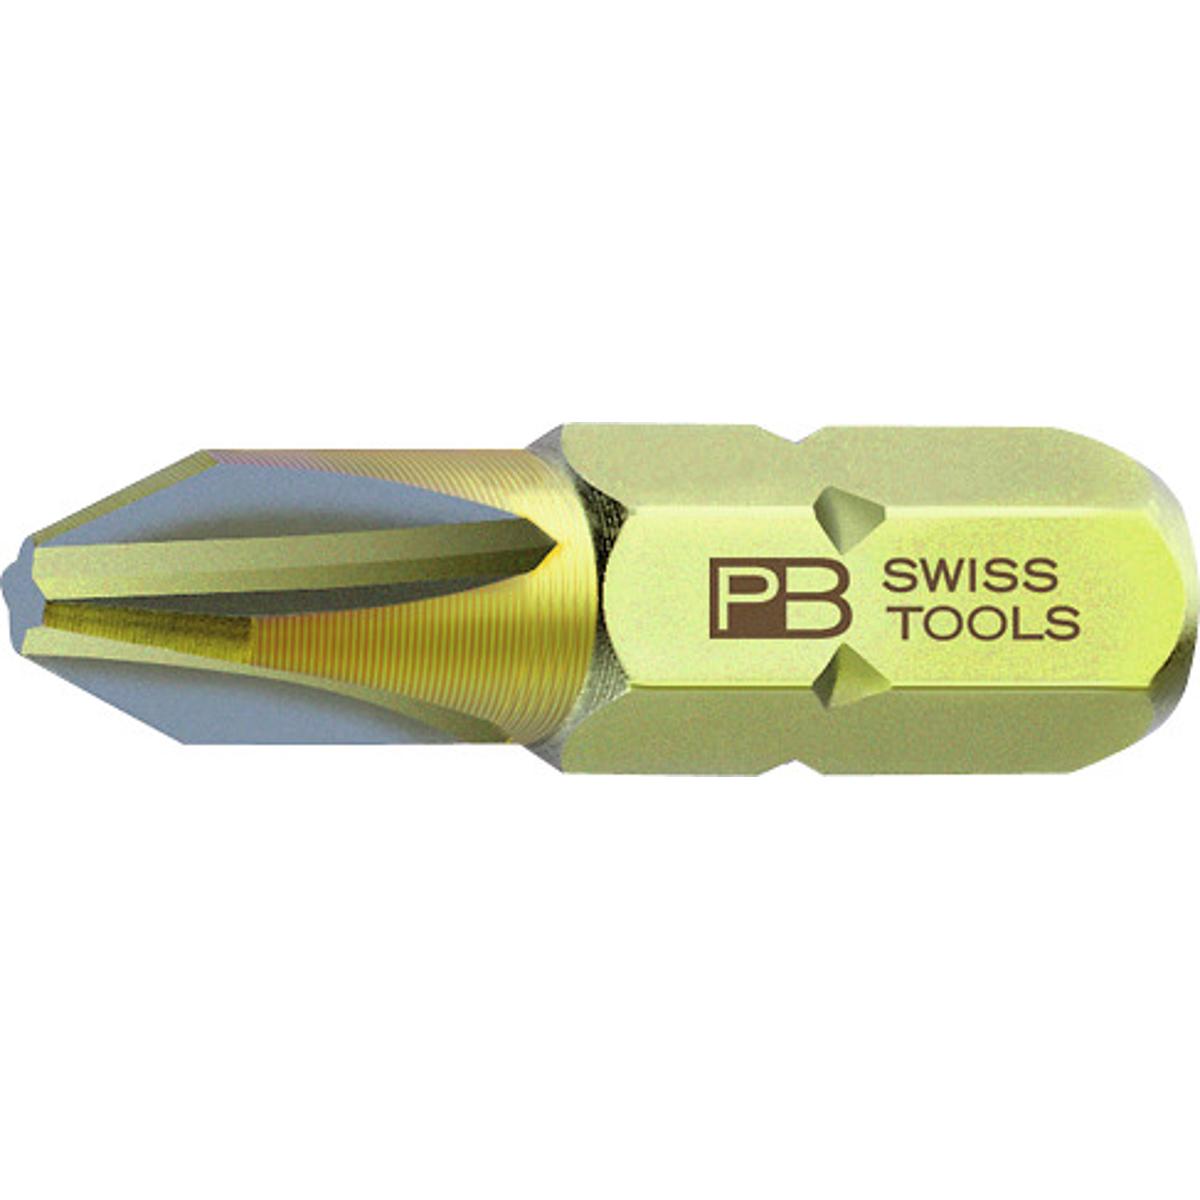 ĐẦU BIT PHILLIPS, 1/4 INCH 0/25 MM PB SWISS TOOLS PB C6.190/0